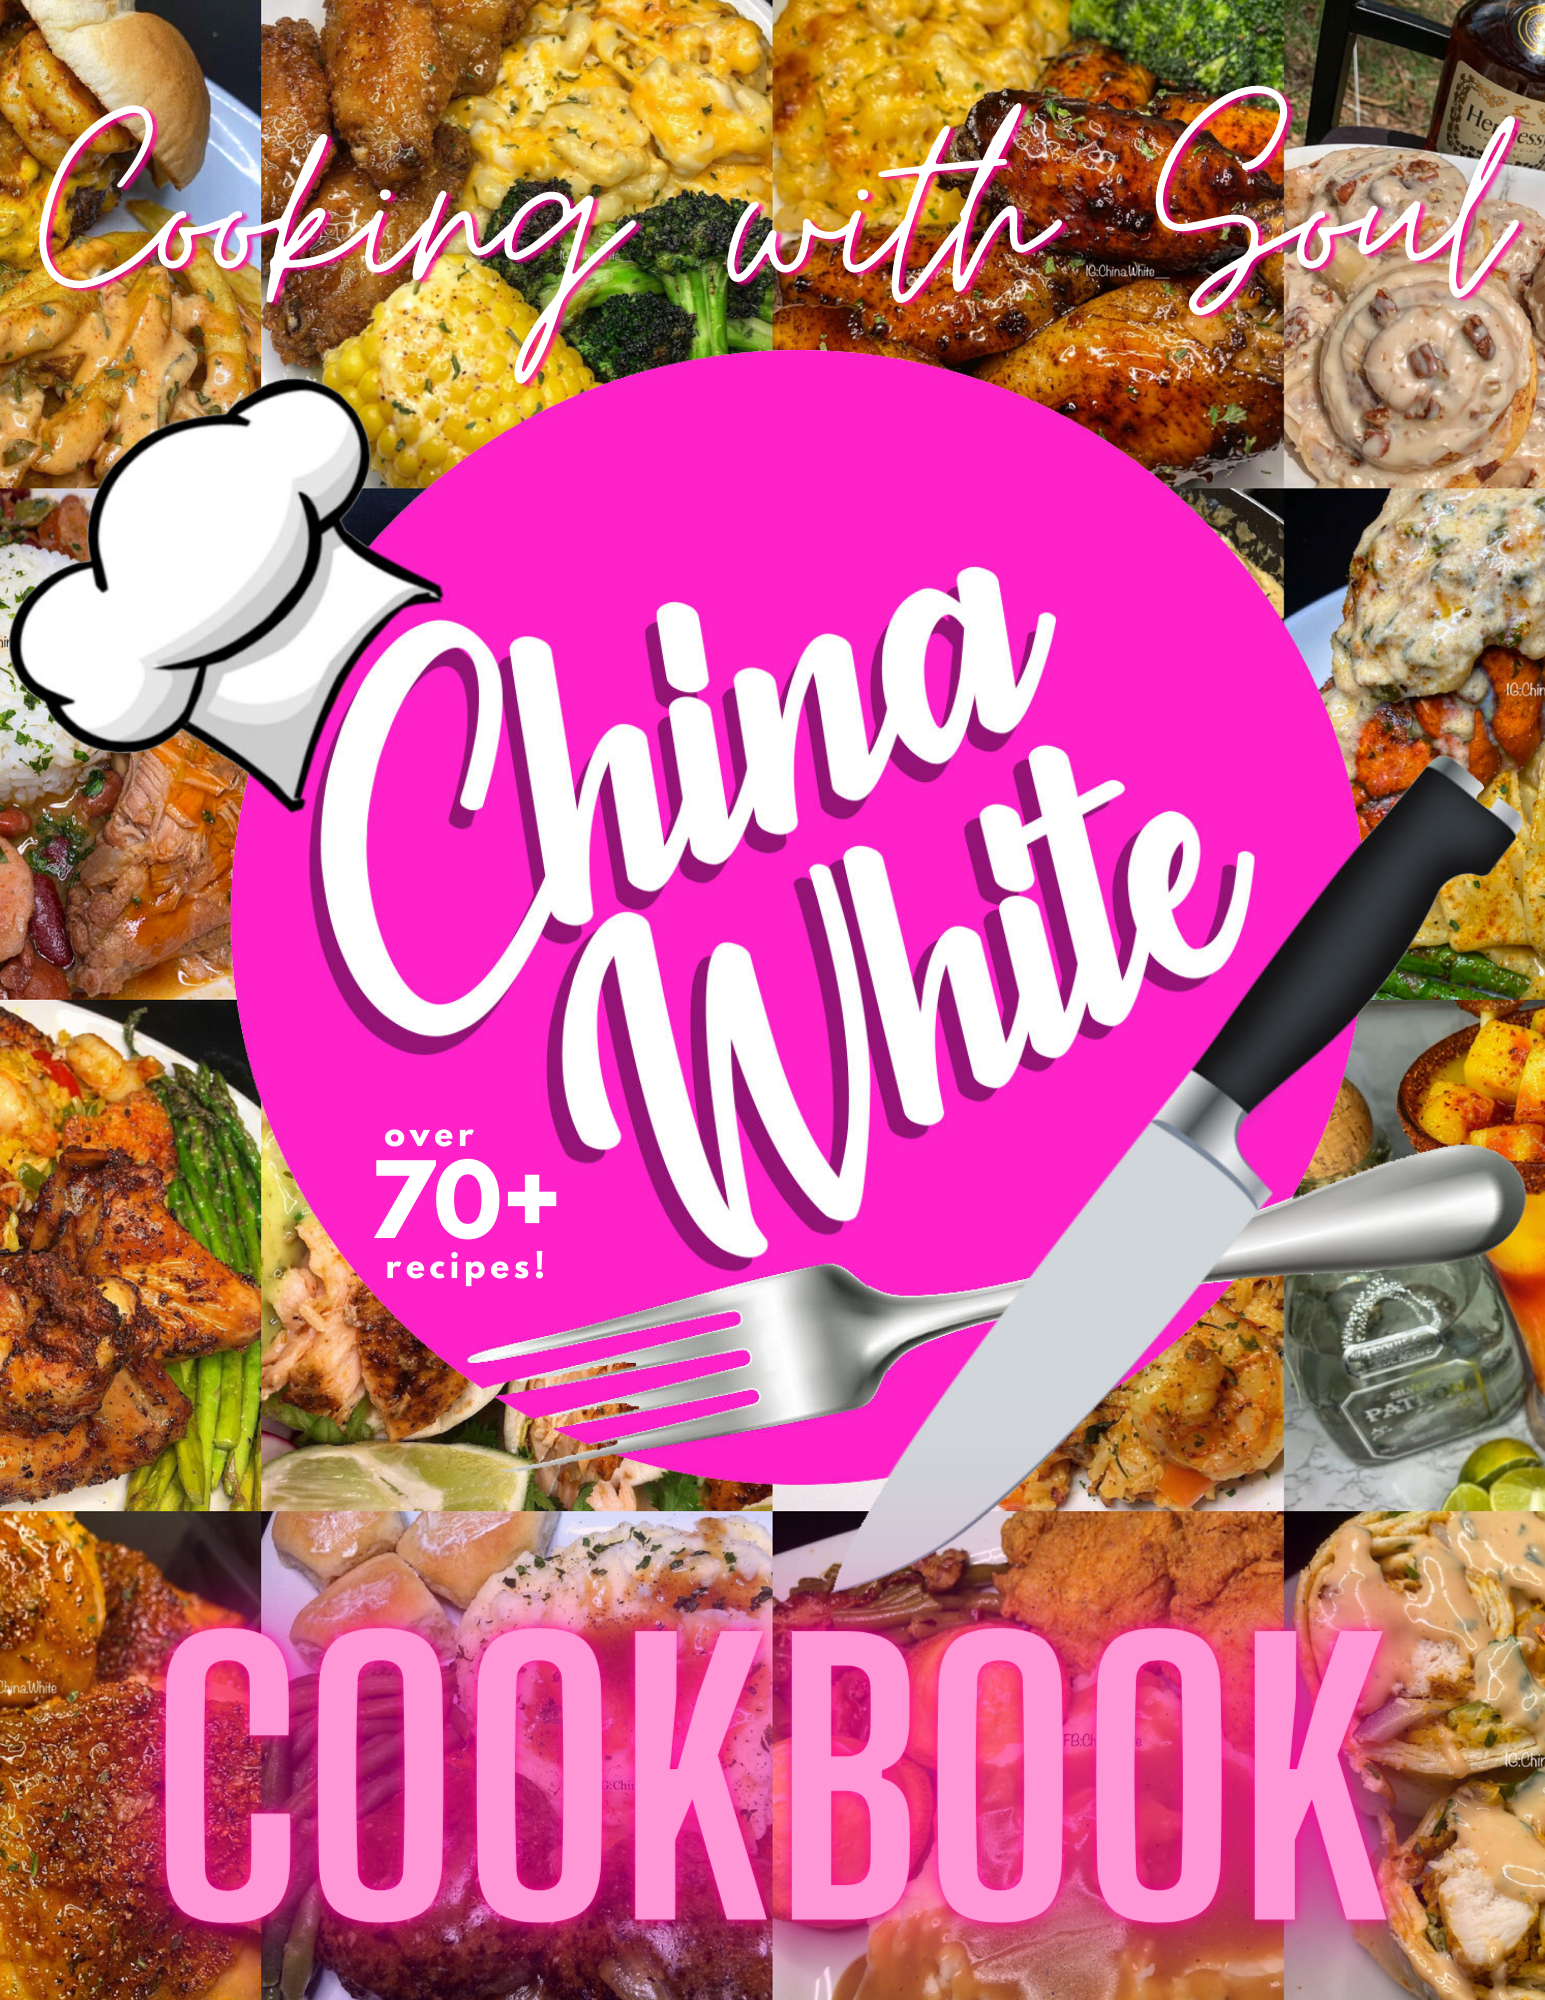 China White Cookbook